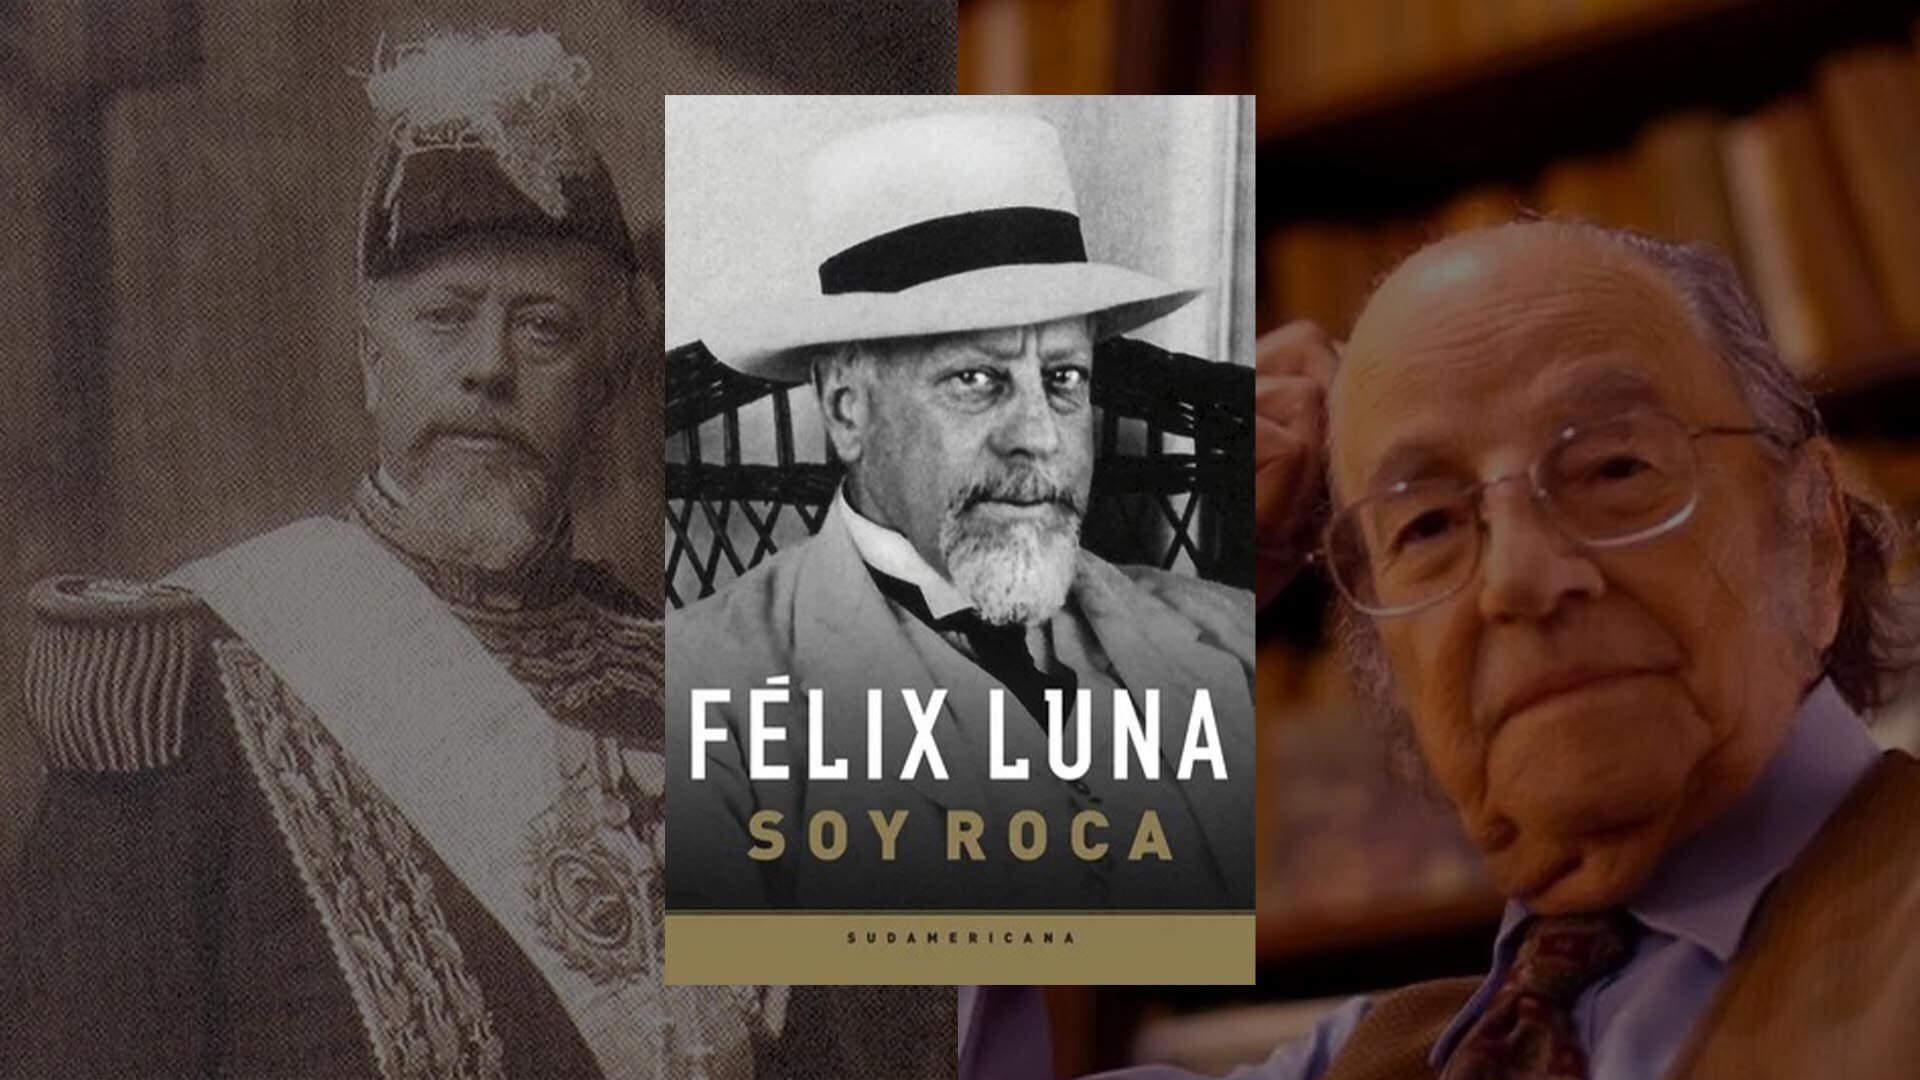 Julio Argentino Roca, Félix Luna y Soy Roca